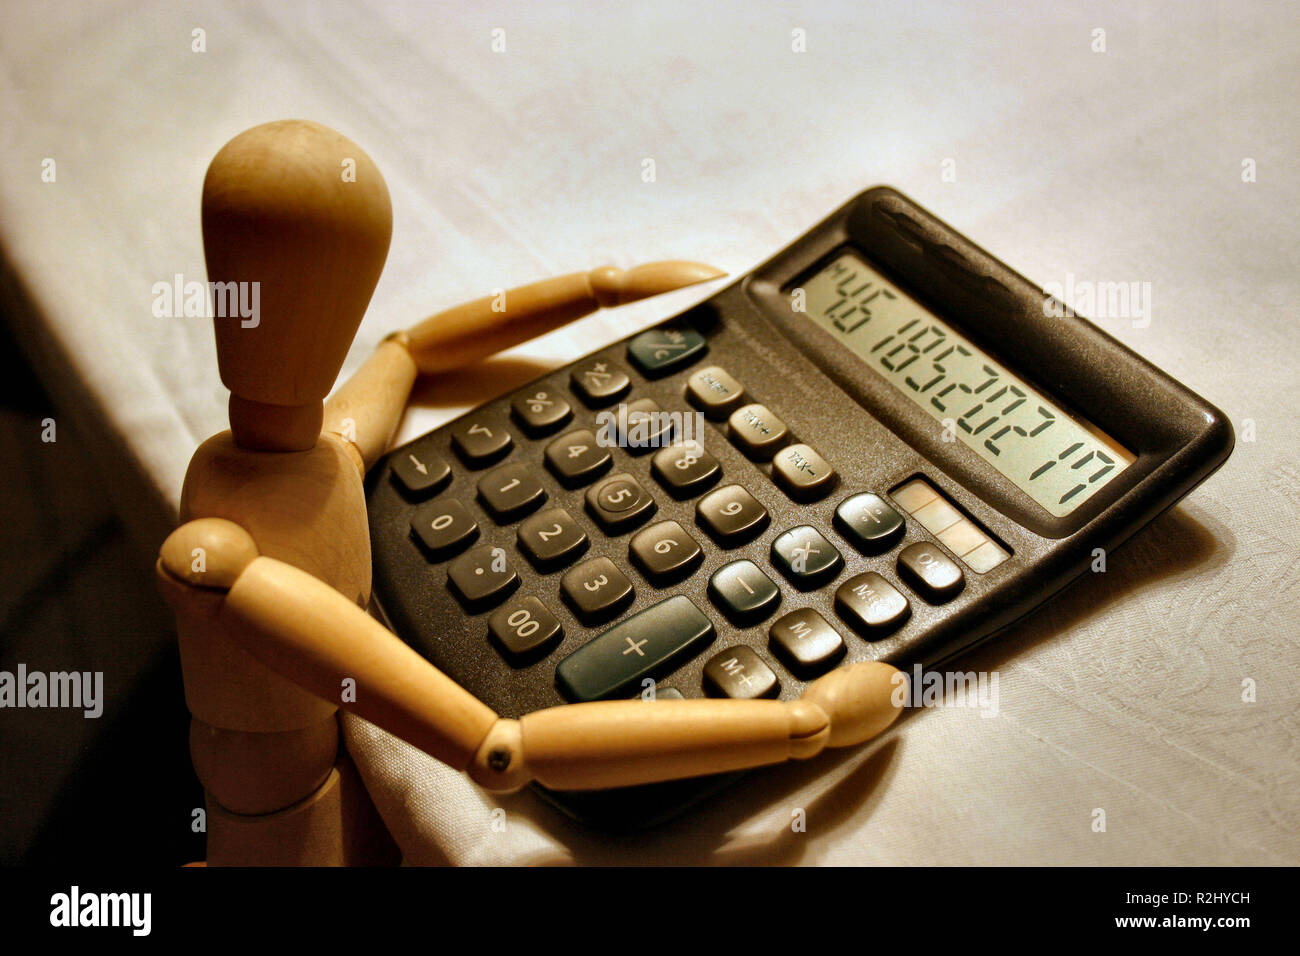 El enfriar calculadoras Foto de stock